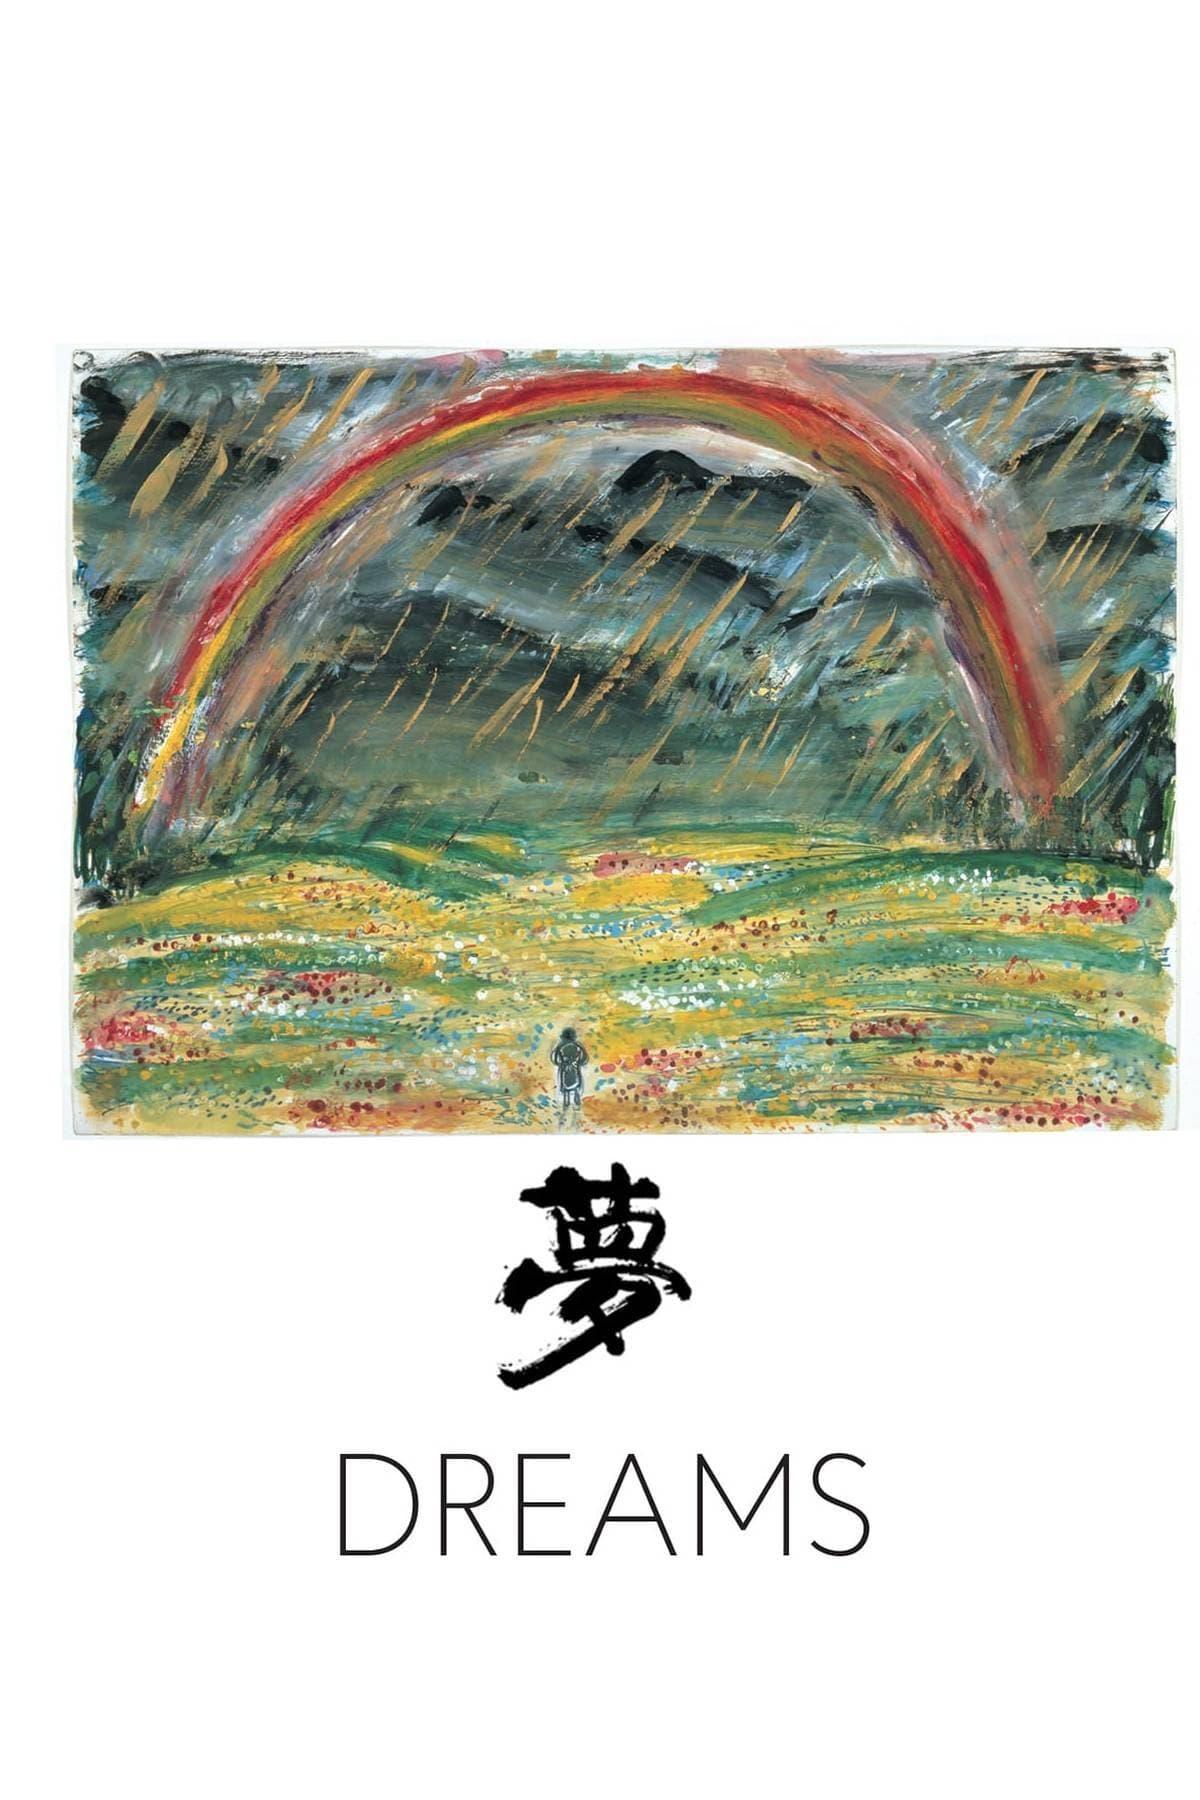 Dreams poster